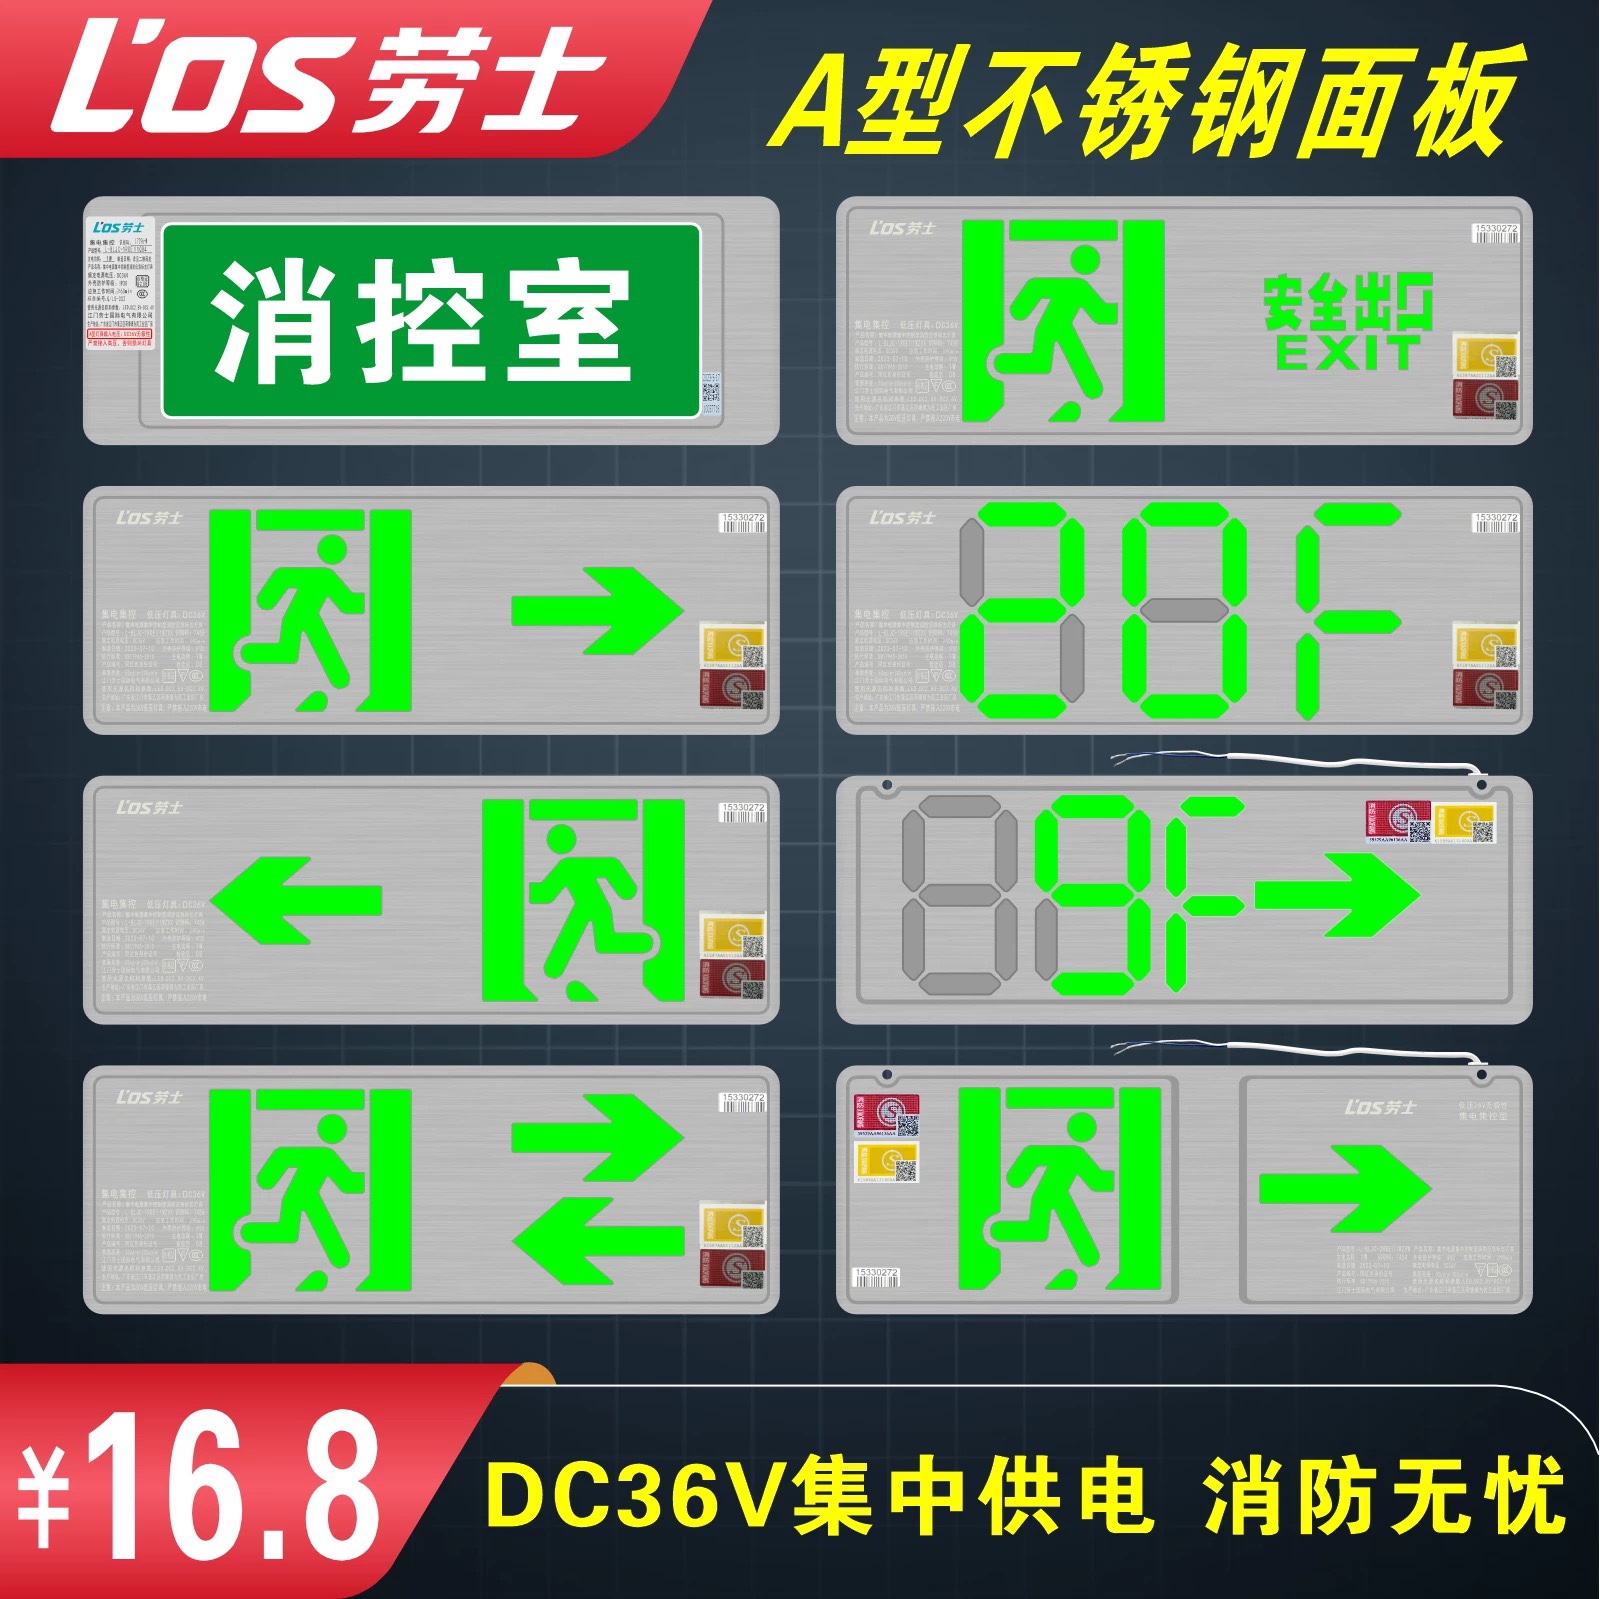 江门劳士安全出口照明灯A型应急灯集控编码疏散指示灯应急灯DC36V